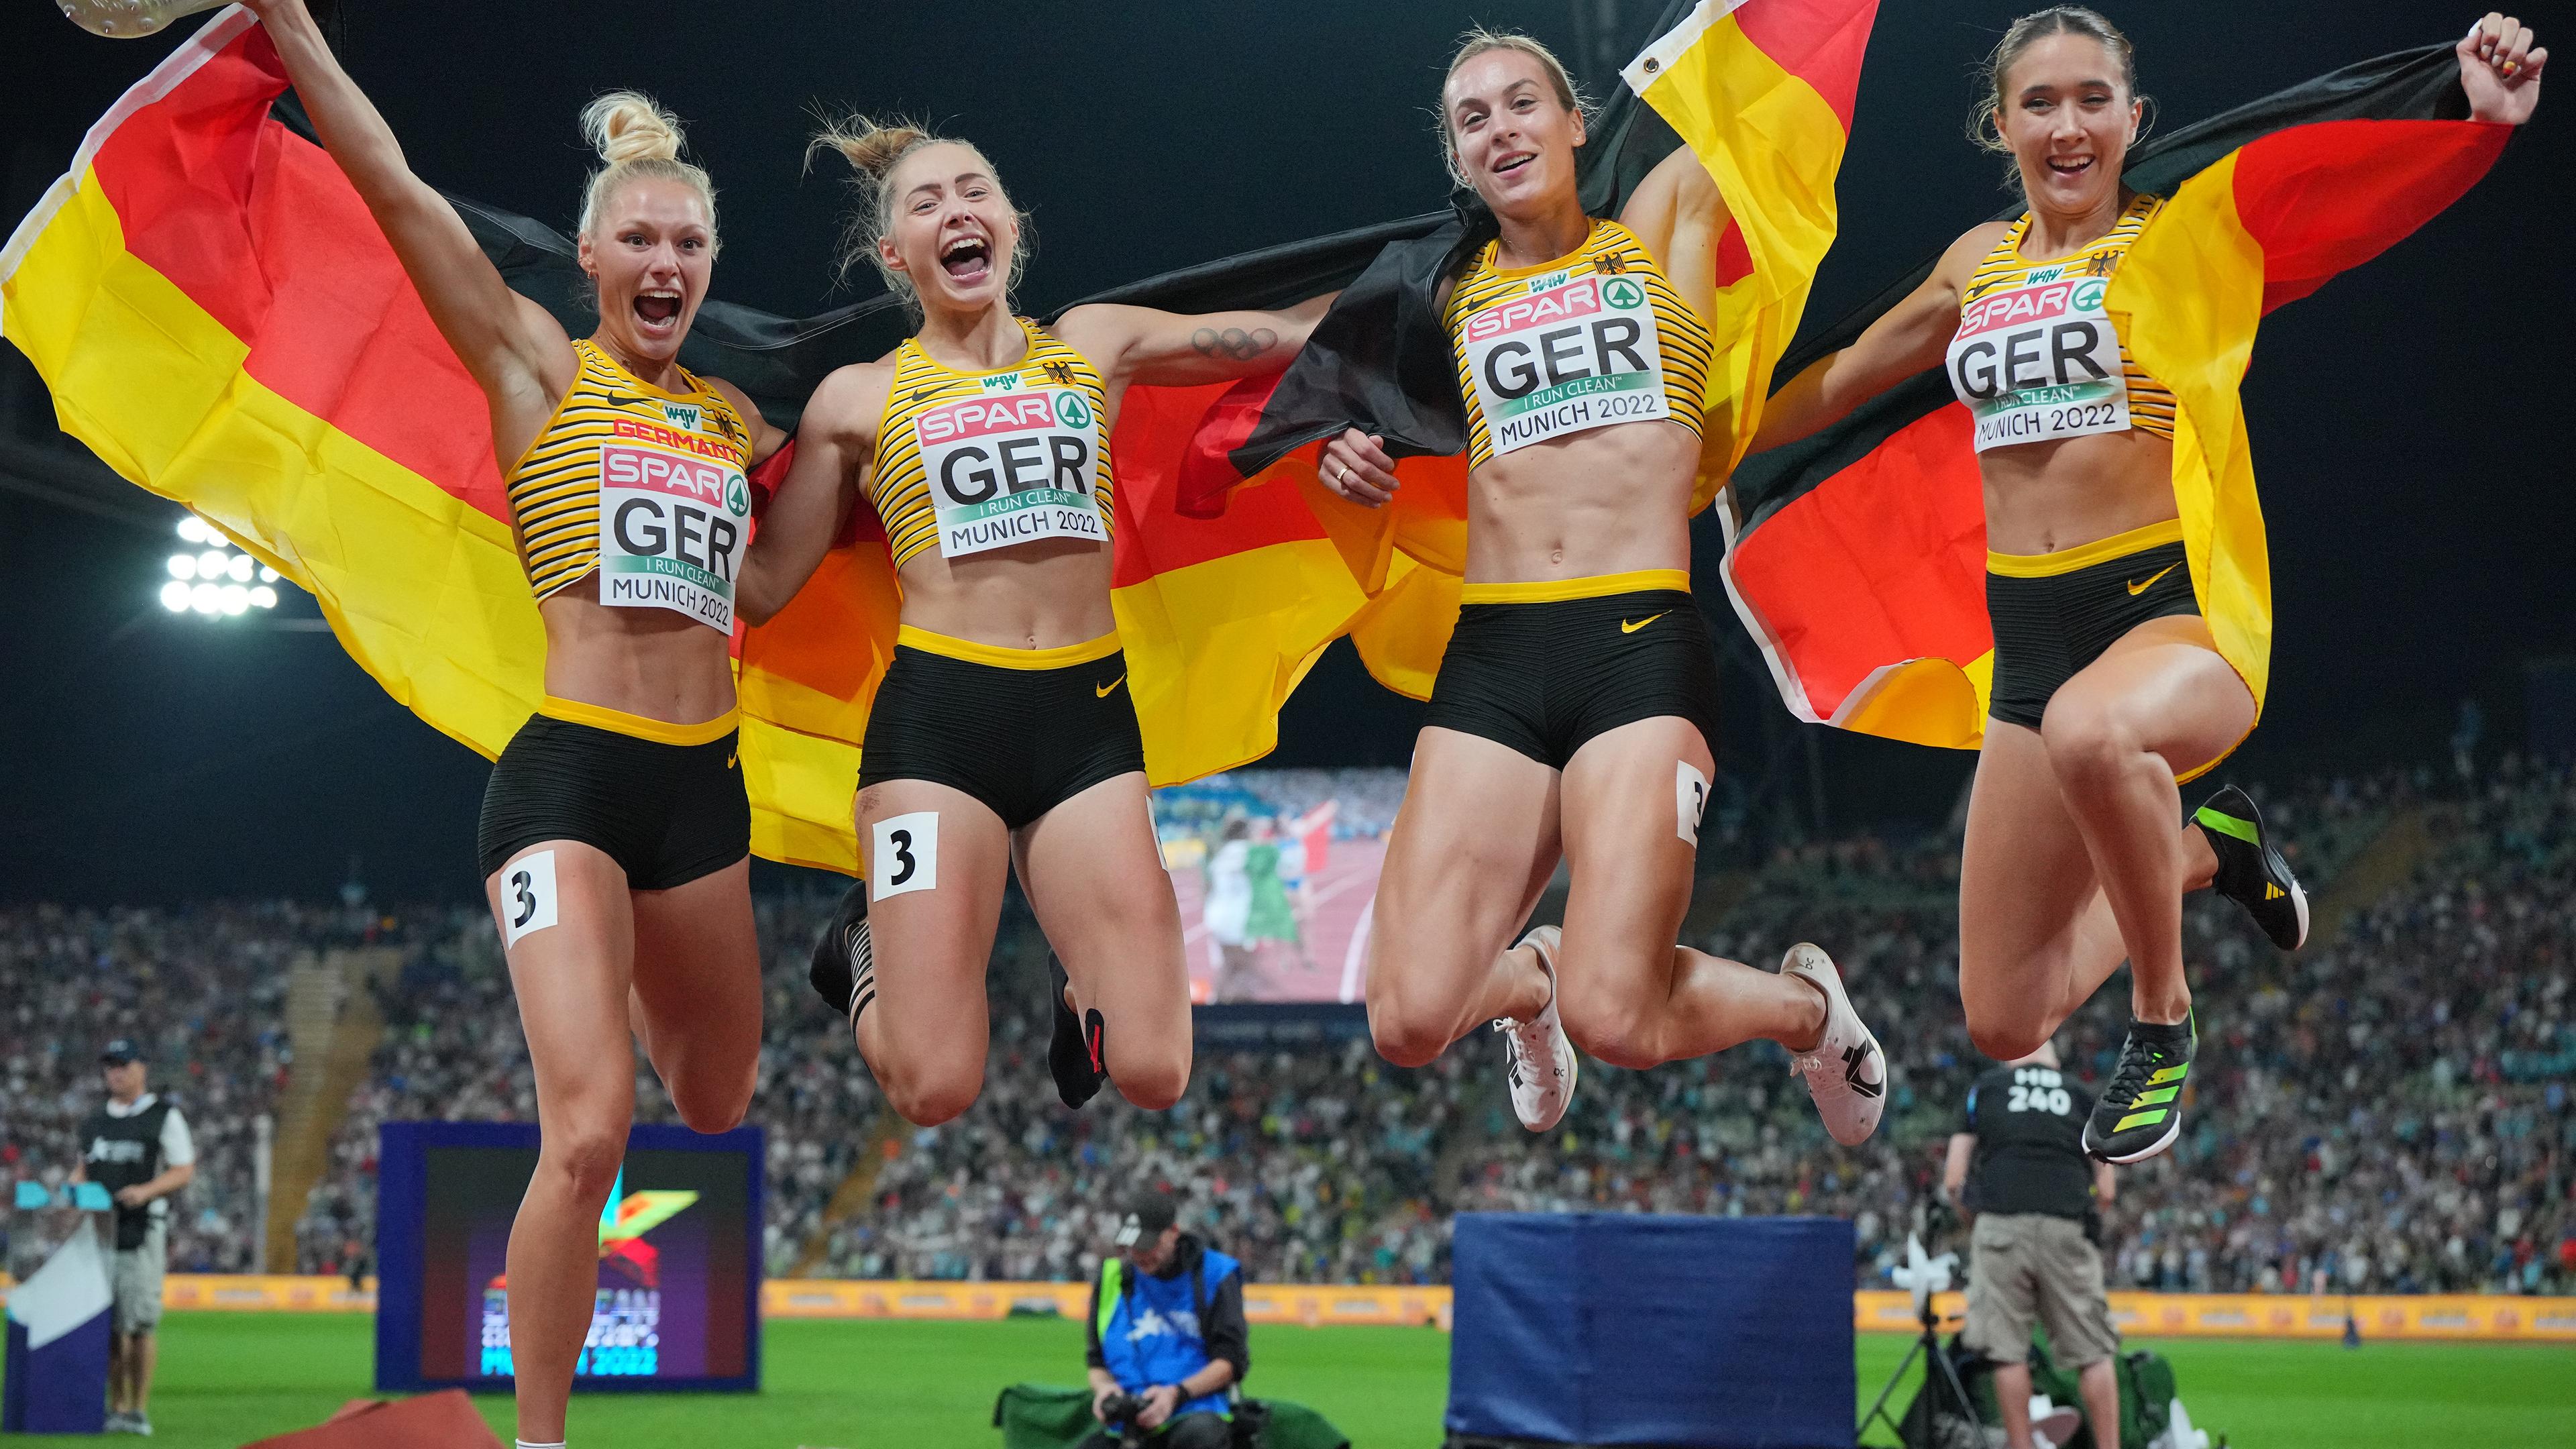 Deutsche 100m-Sprintstaffel der Frauen bejubelt ihren EM-Sieg 2022: Lisa Meyer (l-r), Gina Lückenkemper, Alexandra Burghardt und Rebekka Haase